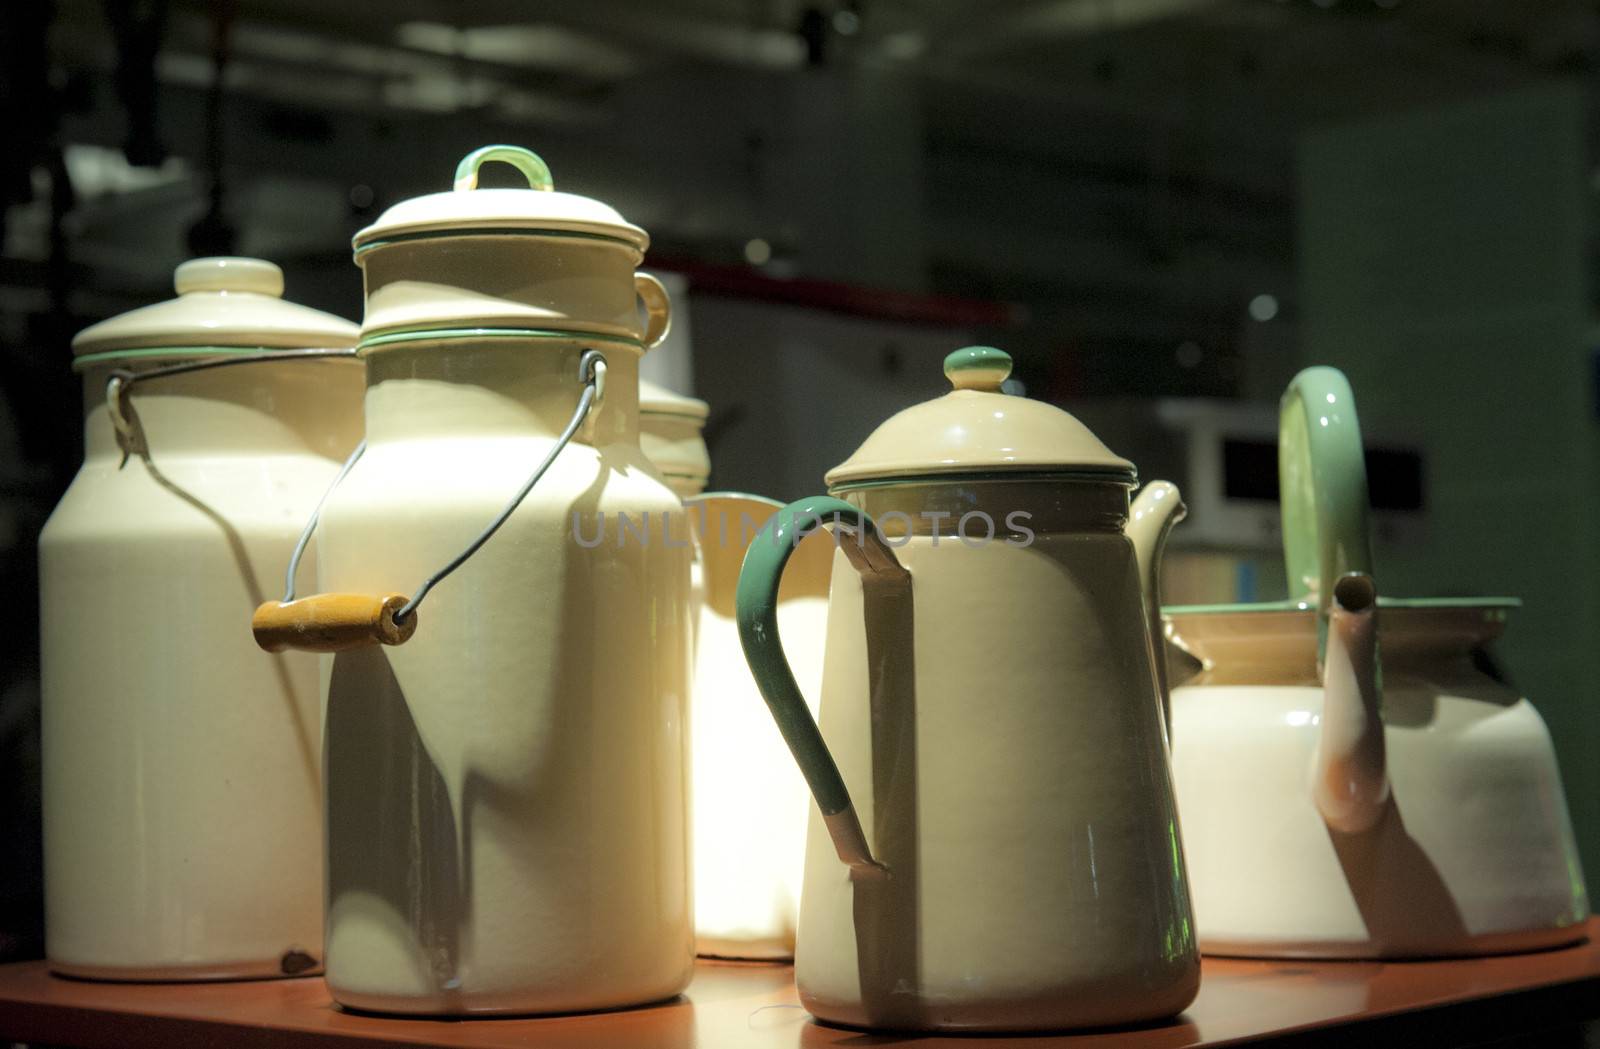  Metal milk jugs by Alenmax